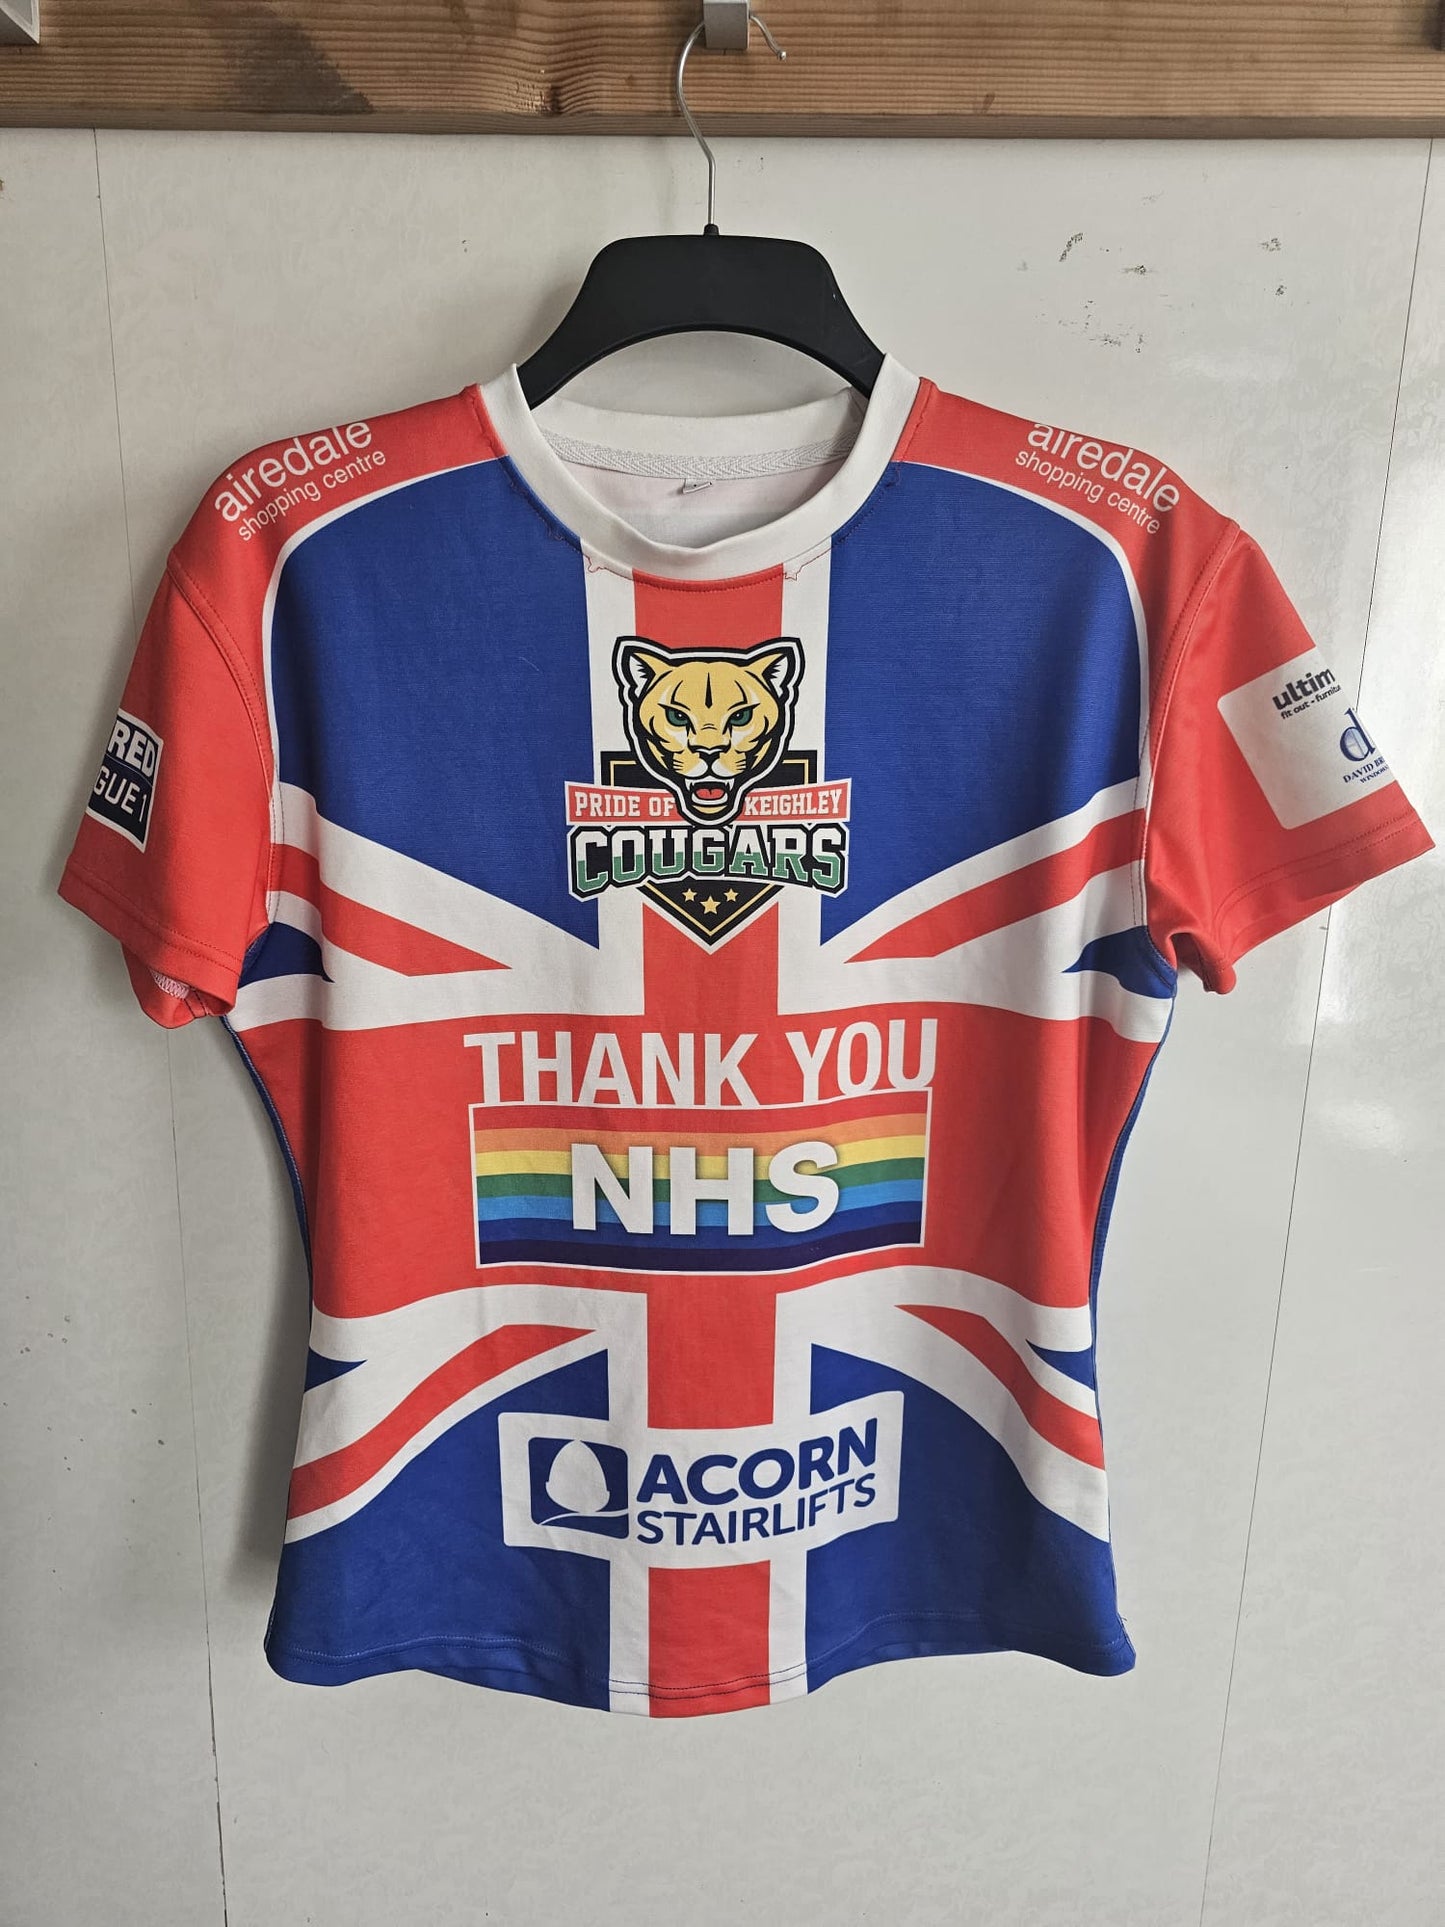 Keighley Cougars Thank You NHS Match Shirt - Mo Agoro